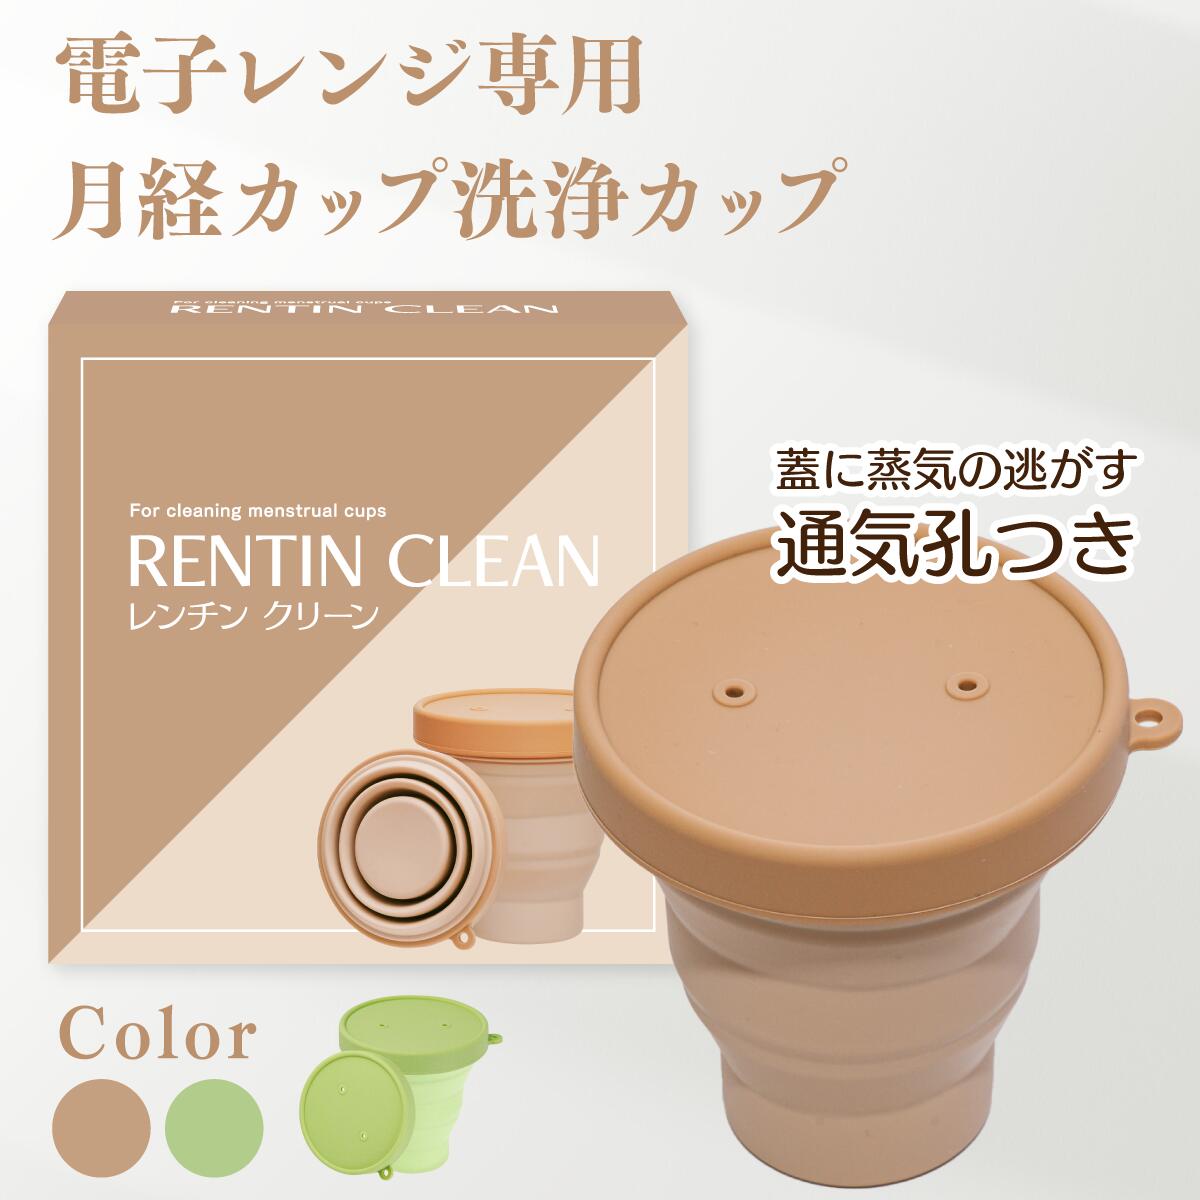 【月経カップ専用洗浄カップ】RENTIN